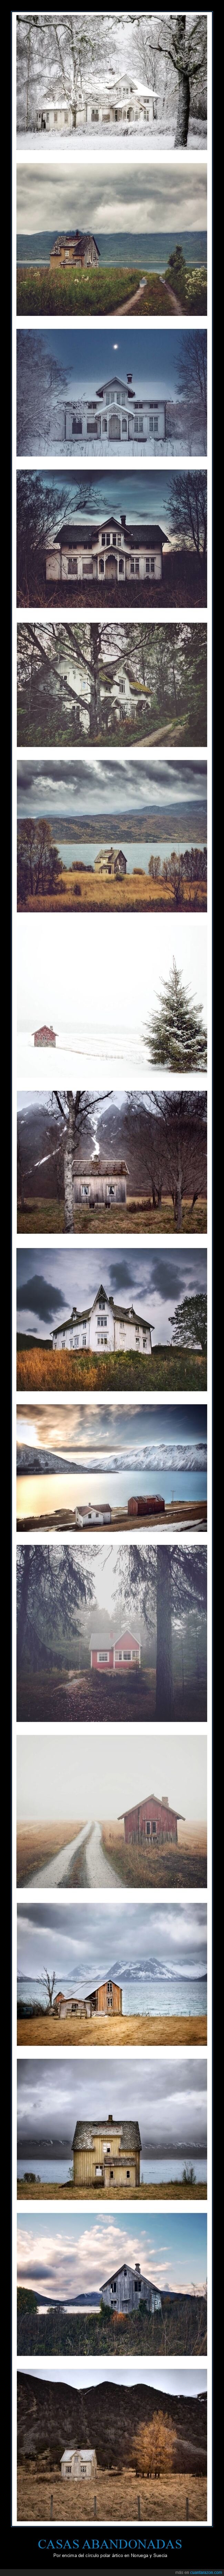 casas,abandonadas,escandinavia